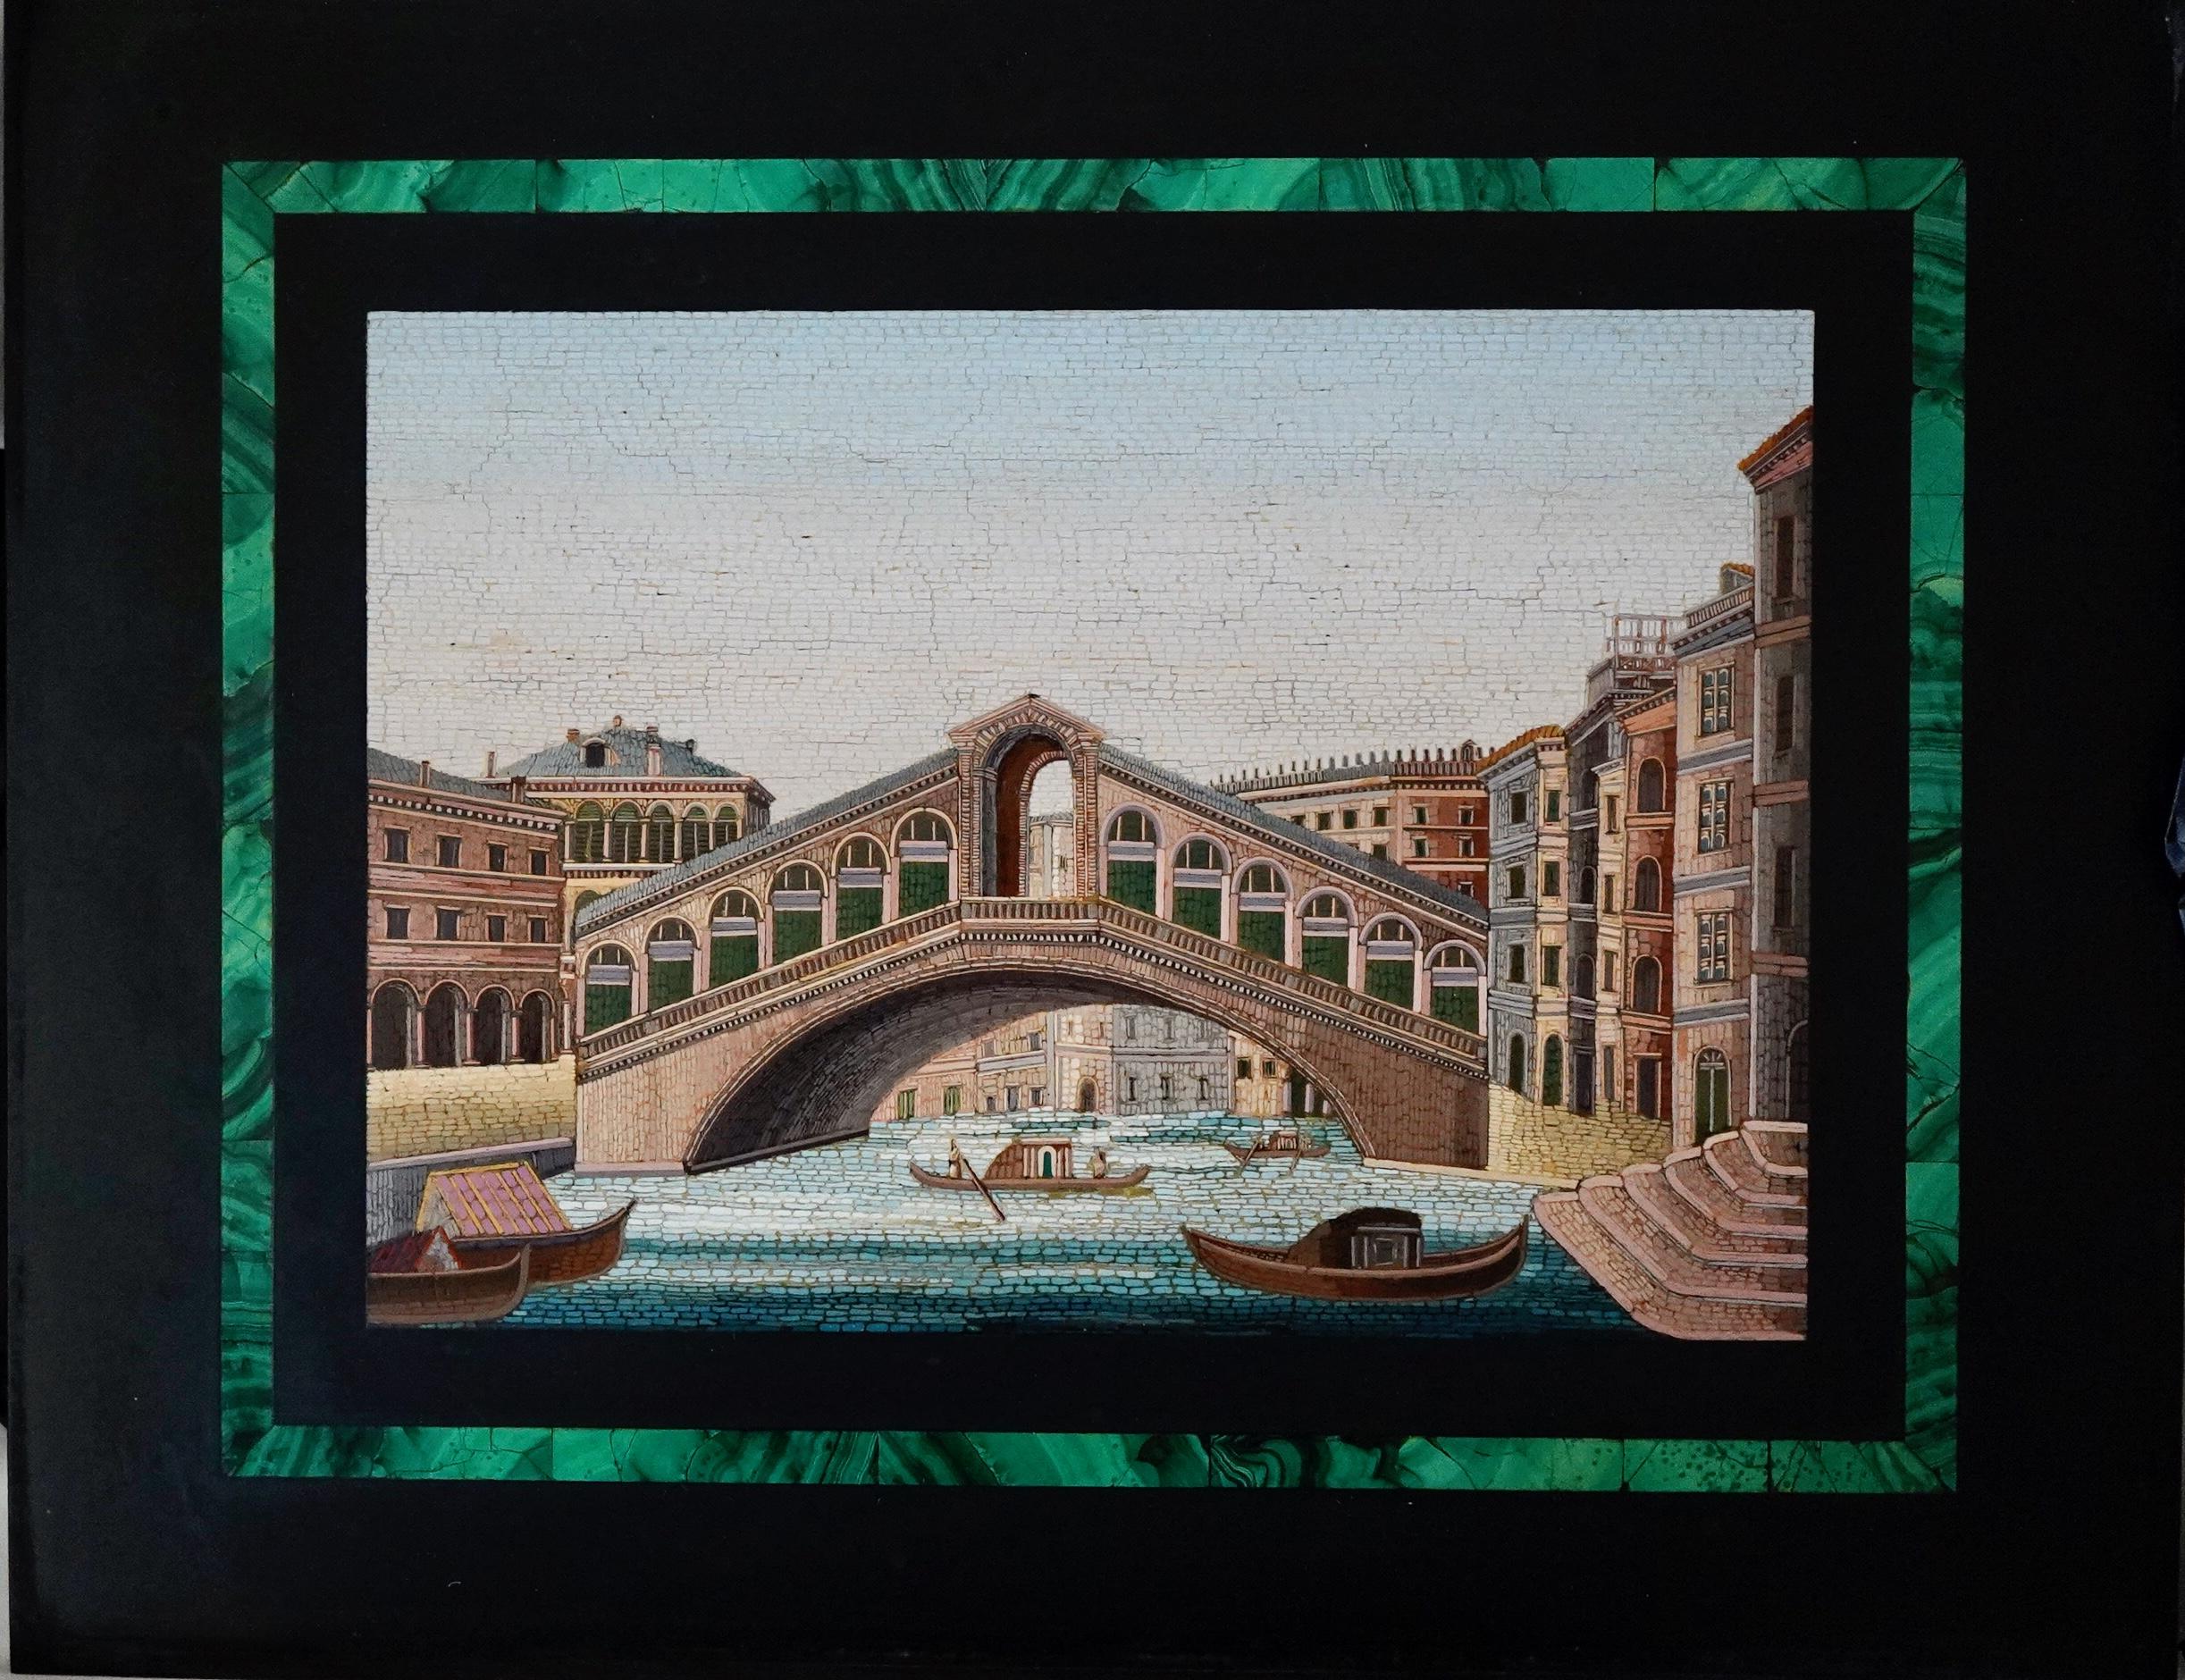 Italienische Mikromosaik-Platte mit Blick auf die Rialto-Brücke in Venedig. Eine sehr gute und detaillierte Arbeit. Die Plakette ist ungerahmt. Das Mosaik selbst ist 6,5 x 9,25 Zoll groß, insgesamt 11 x 14 Zoll.